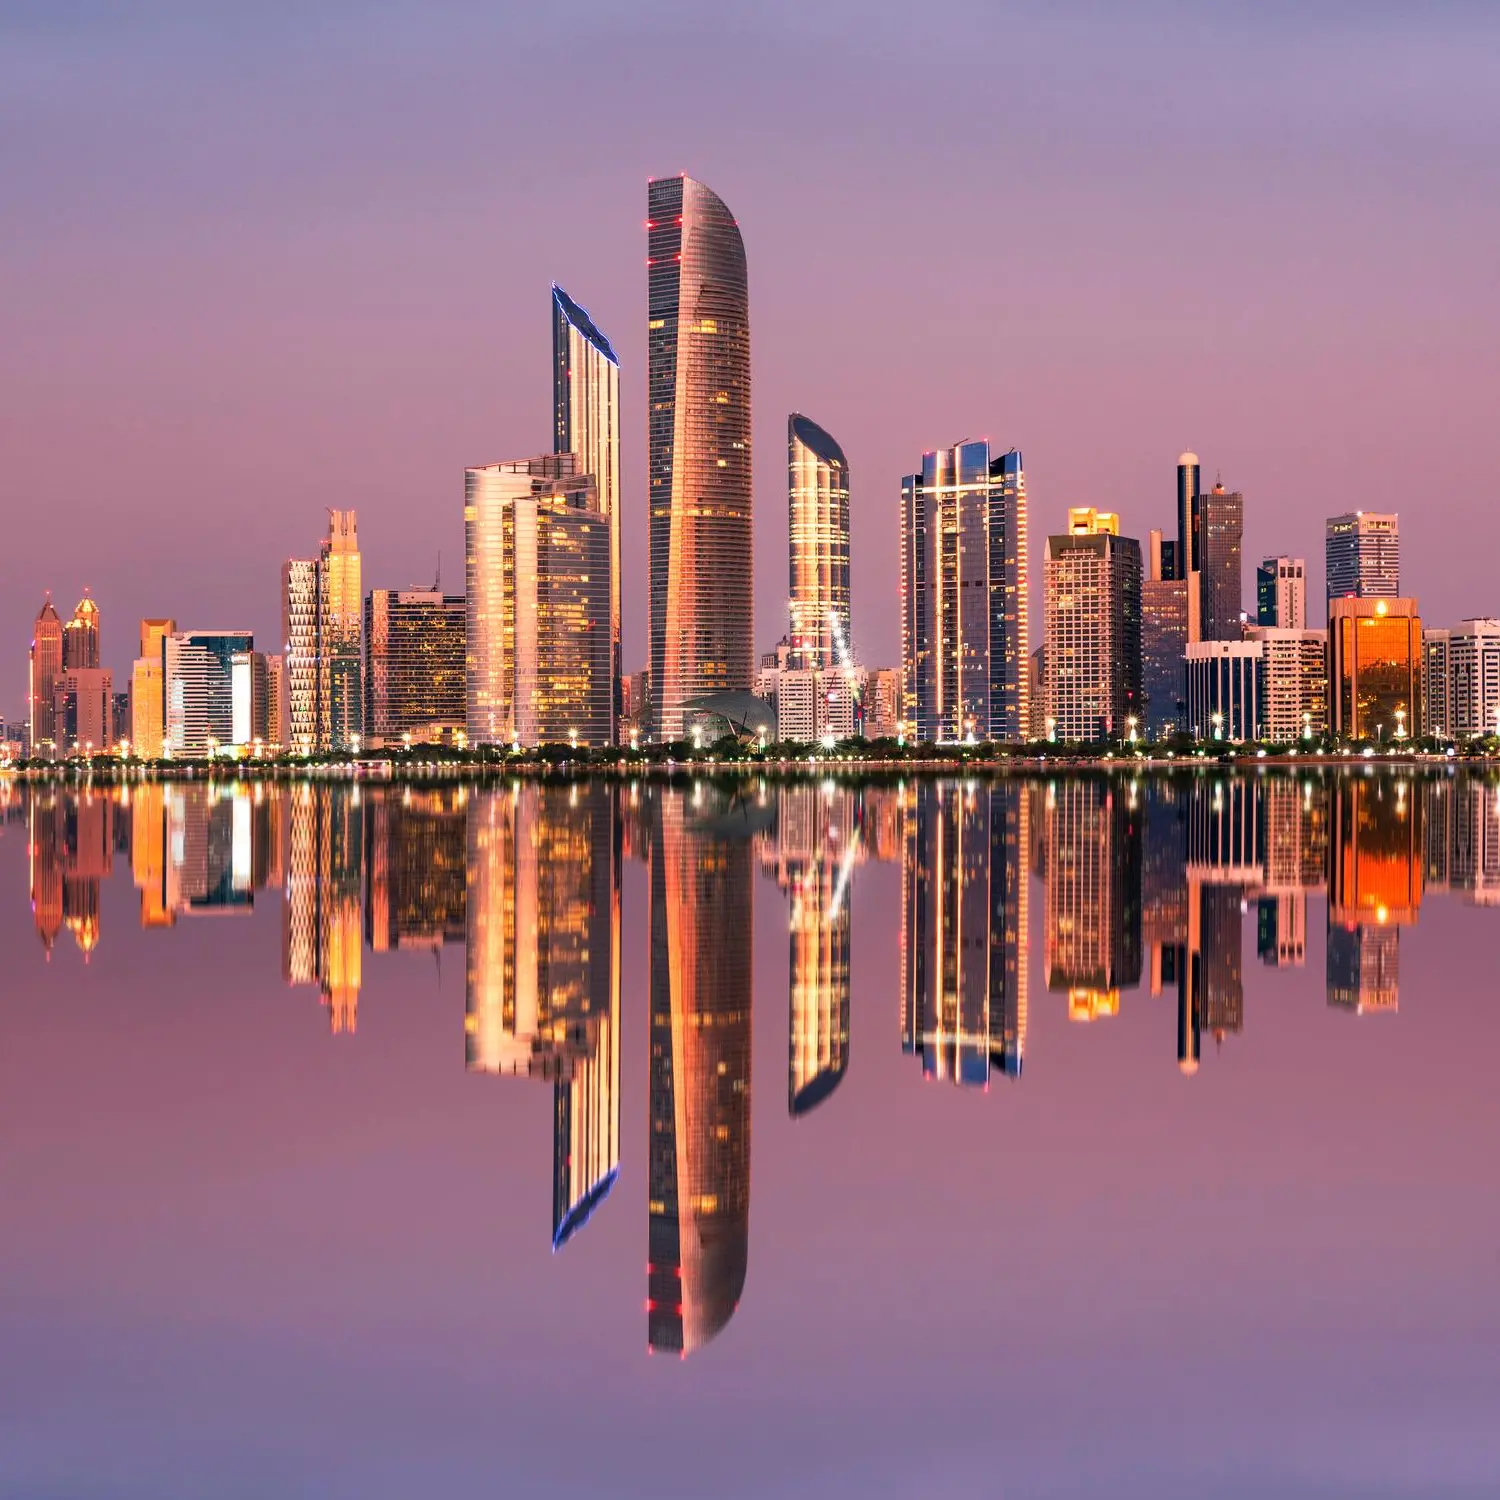 الإمارات تقدم قروض سكنية وإعفاءات بحوالي 2.8 مليار درهم لمواطنين بأبوظبي